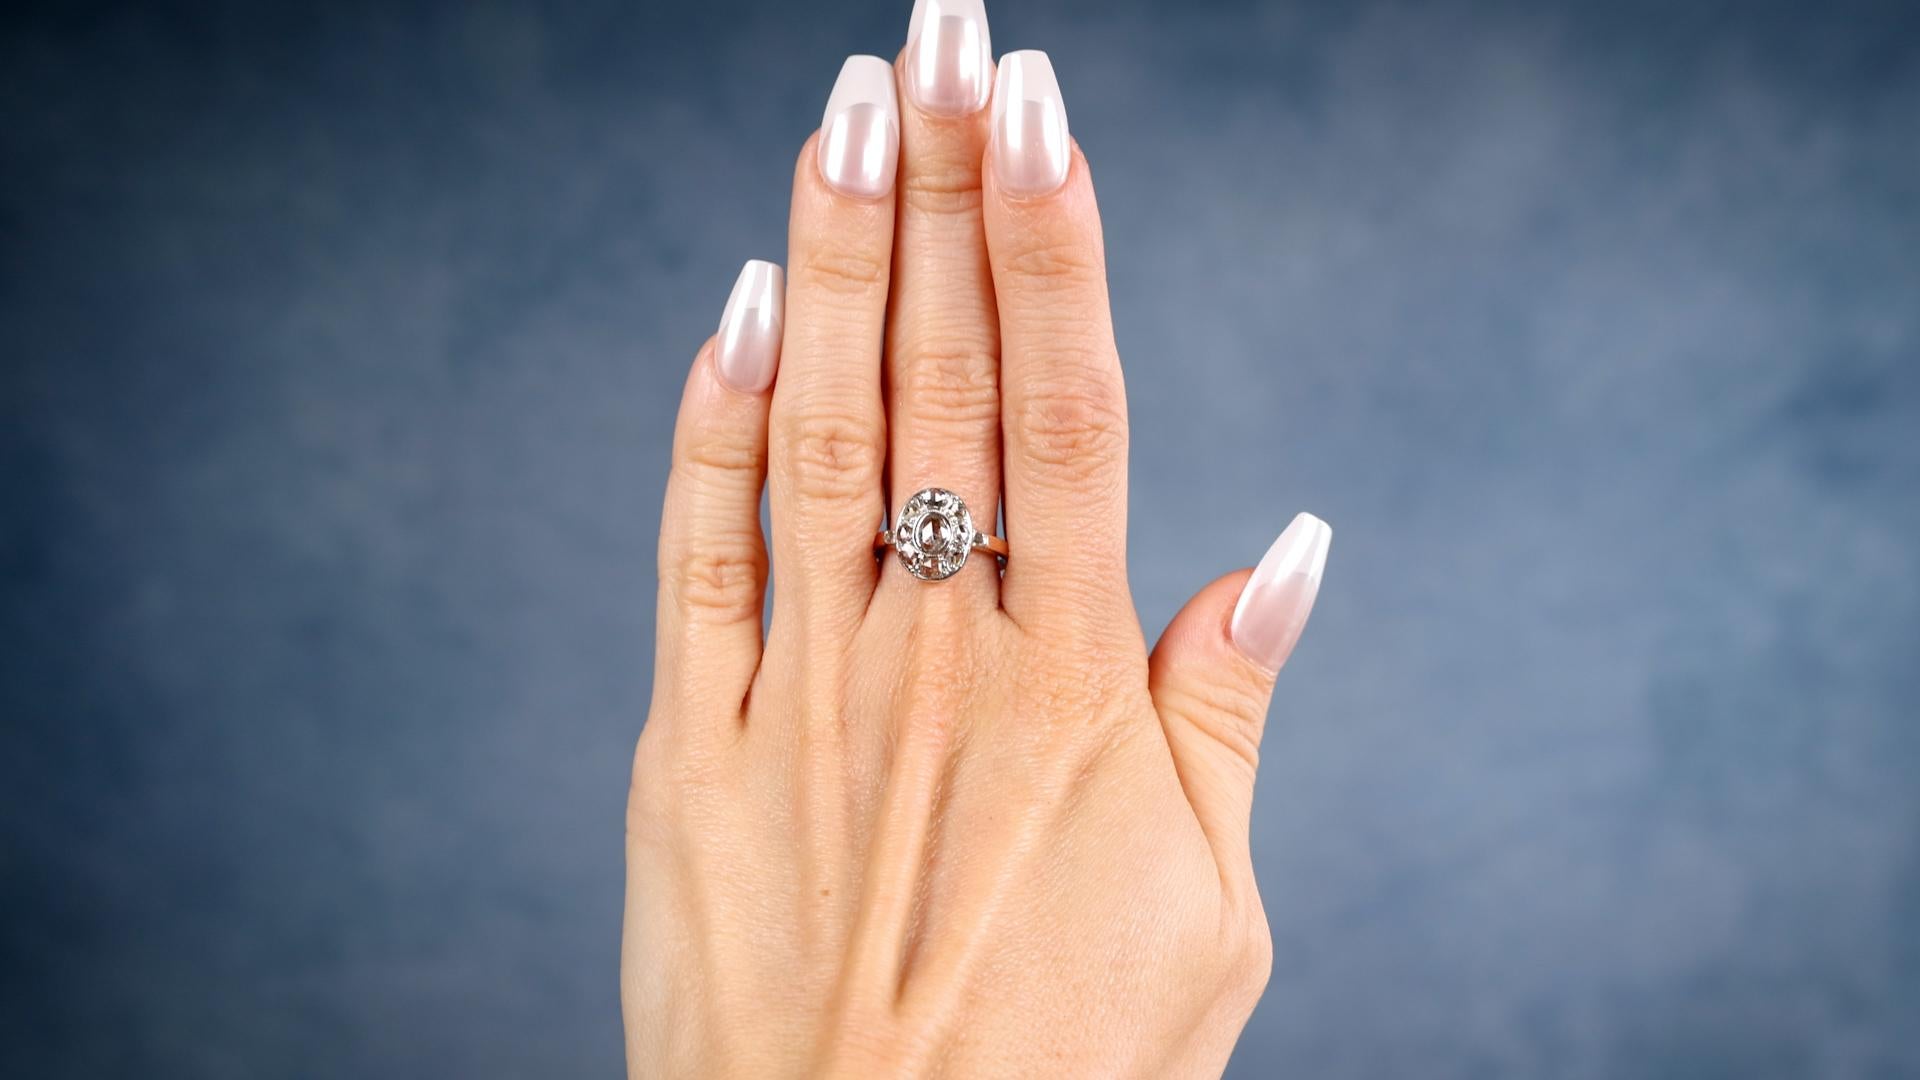 Ein Edwardian Diamant 14k Rose Gold Silber Cluster Ring. Mit einem Diamanten im Rosenschliff mit einem Gewicht von etwa 0,20 Karat, Farbe J, Reinheit I1. Akzentuiert durch 10 Diamanten im Rosenschliff mit einem Gesamtgewicht von etwa 0,90 Karat,